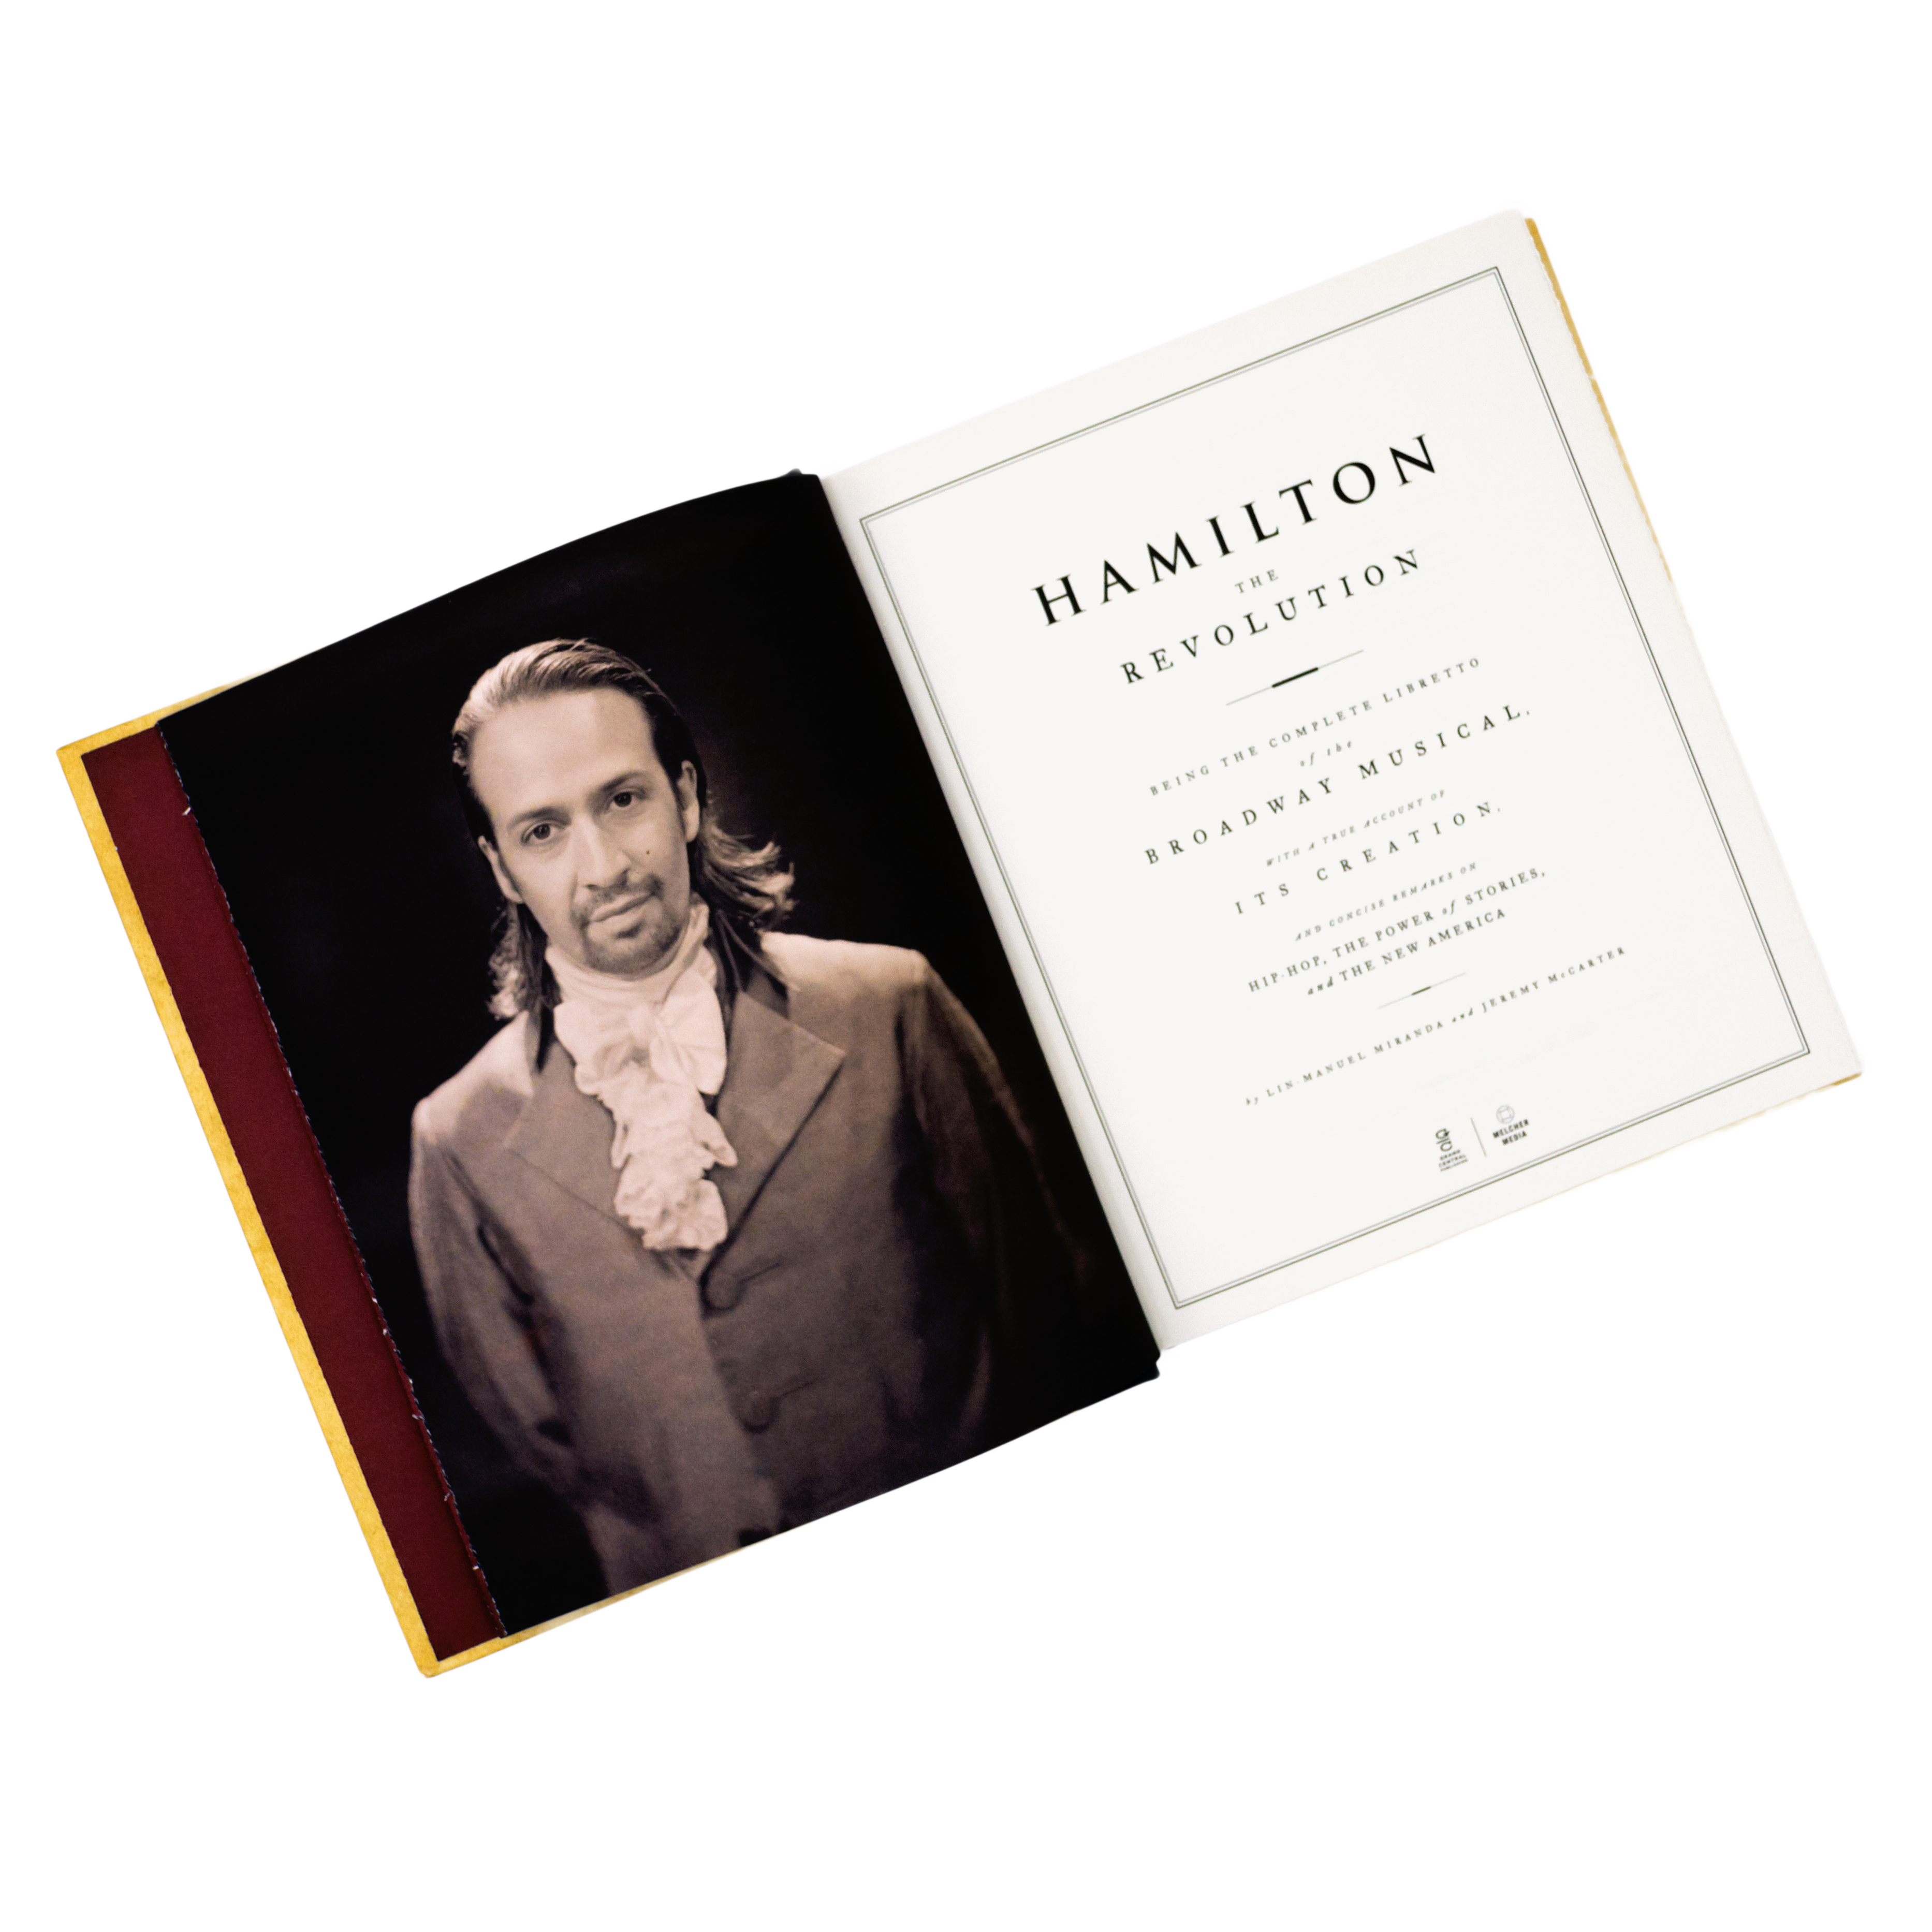 HAMILTON The Revolution Hardcover Book - Image 3